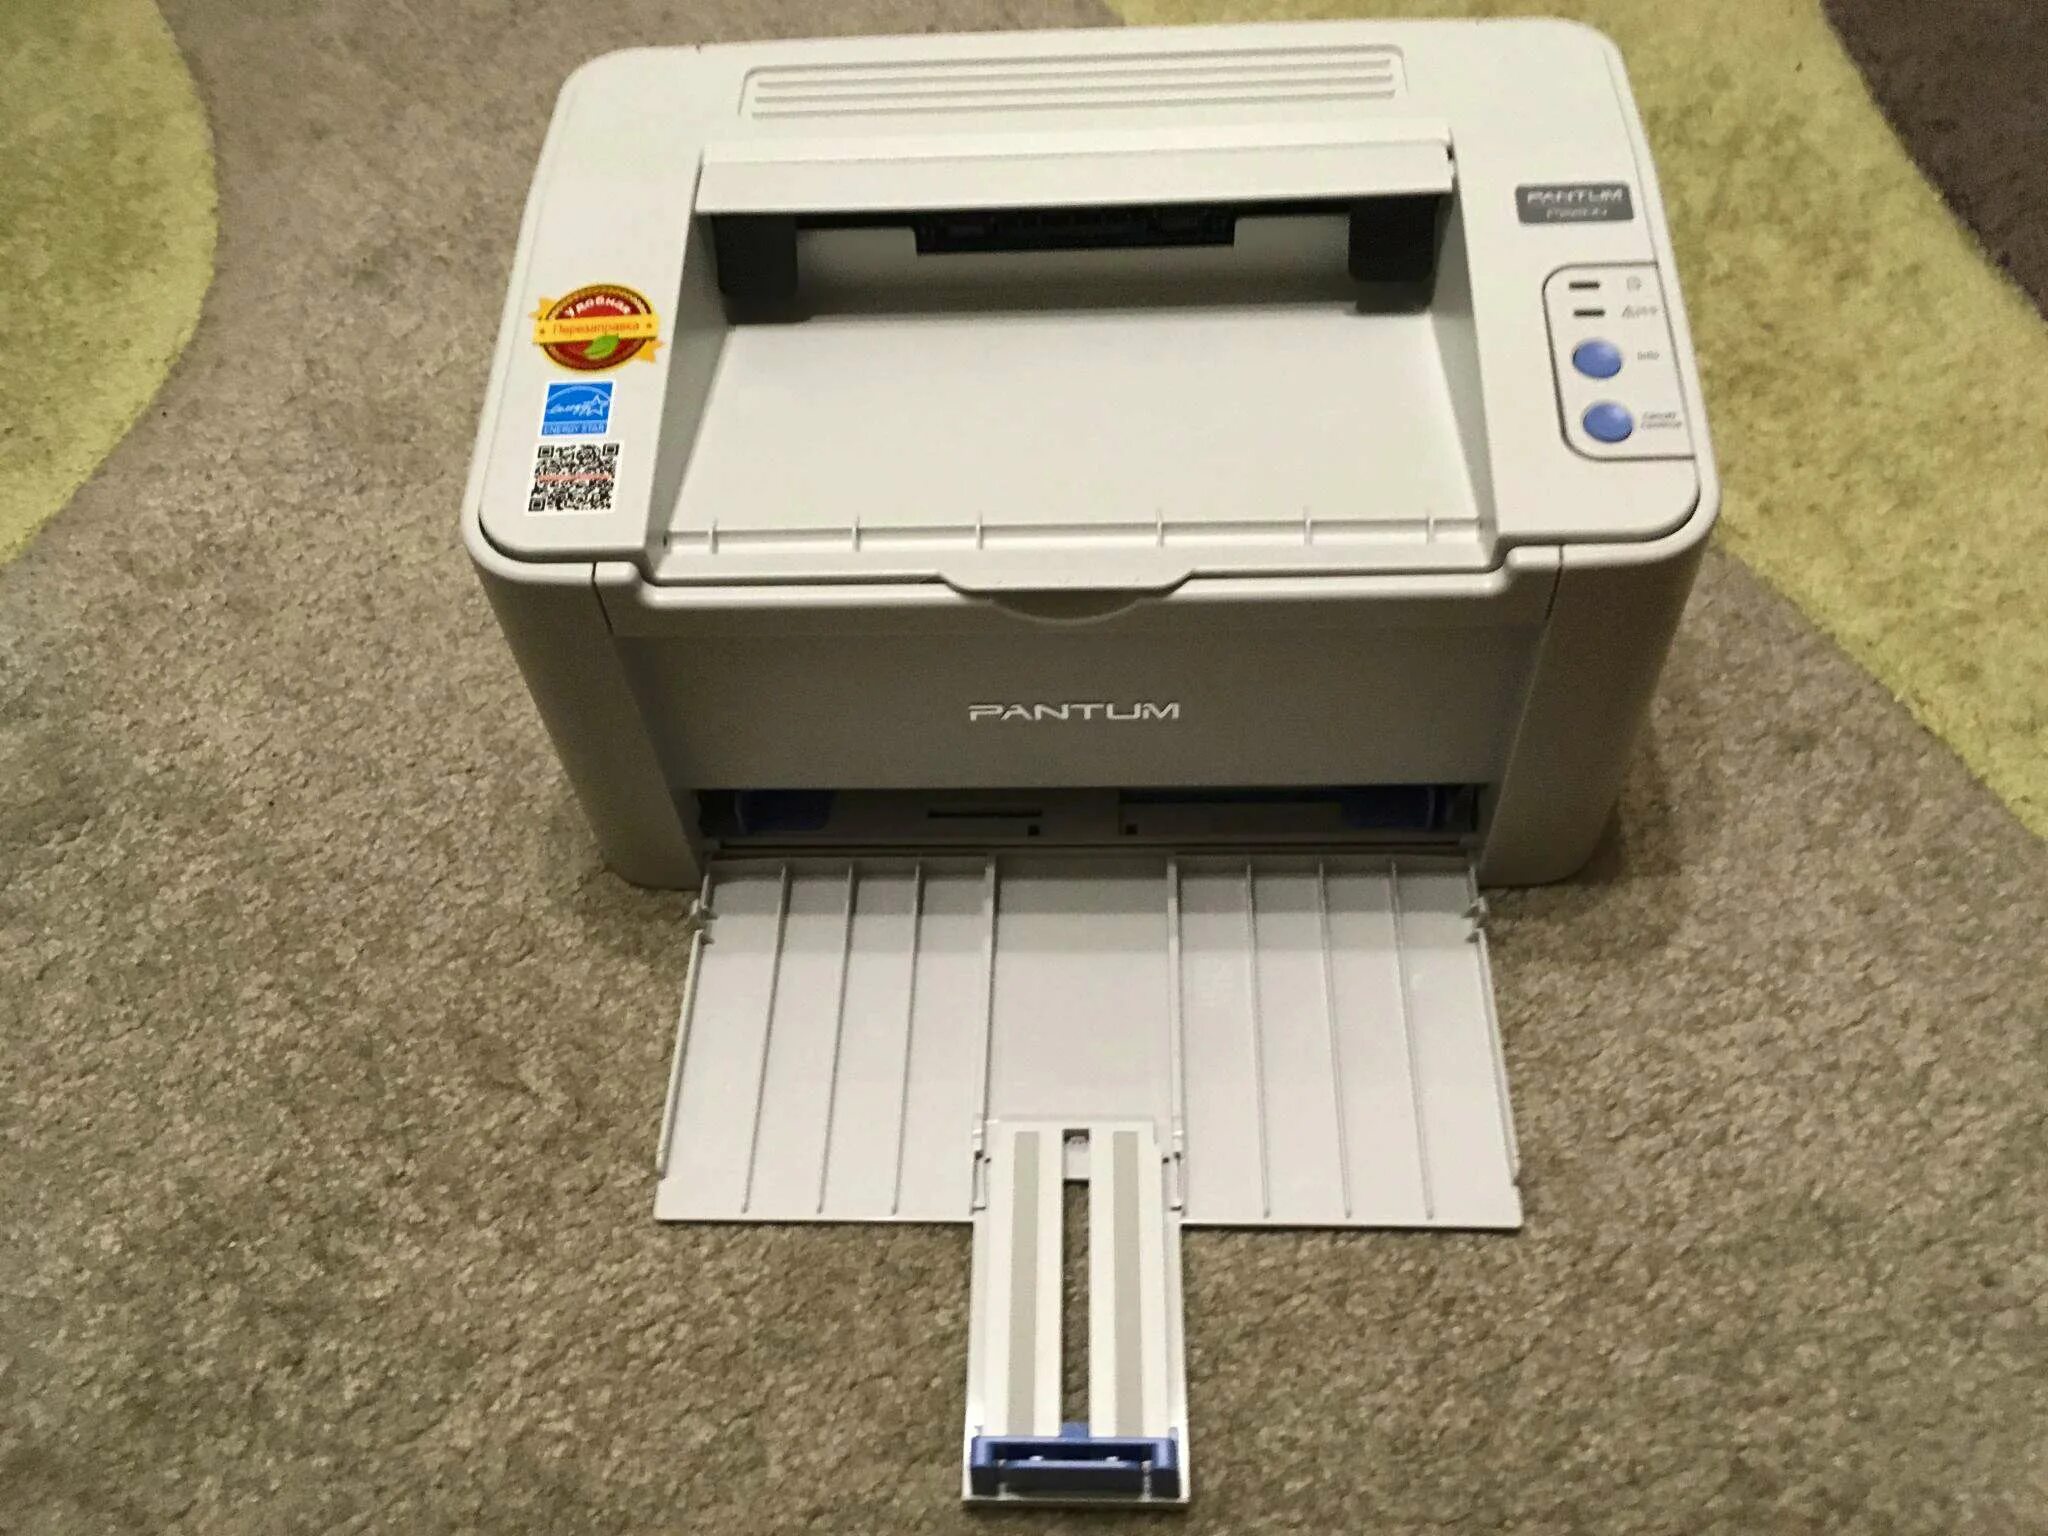 Принтер лазерный Pantum p2200. Принтер Pantum 2200. Pantum принтер p2200 принтер. Принтер Pantum p2200, серый.